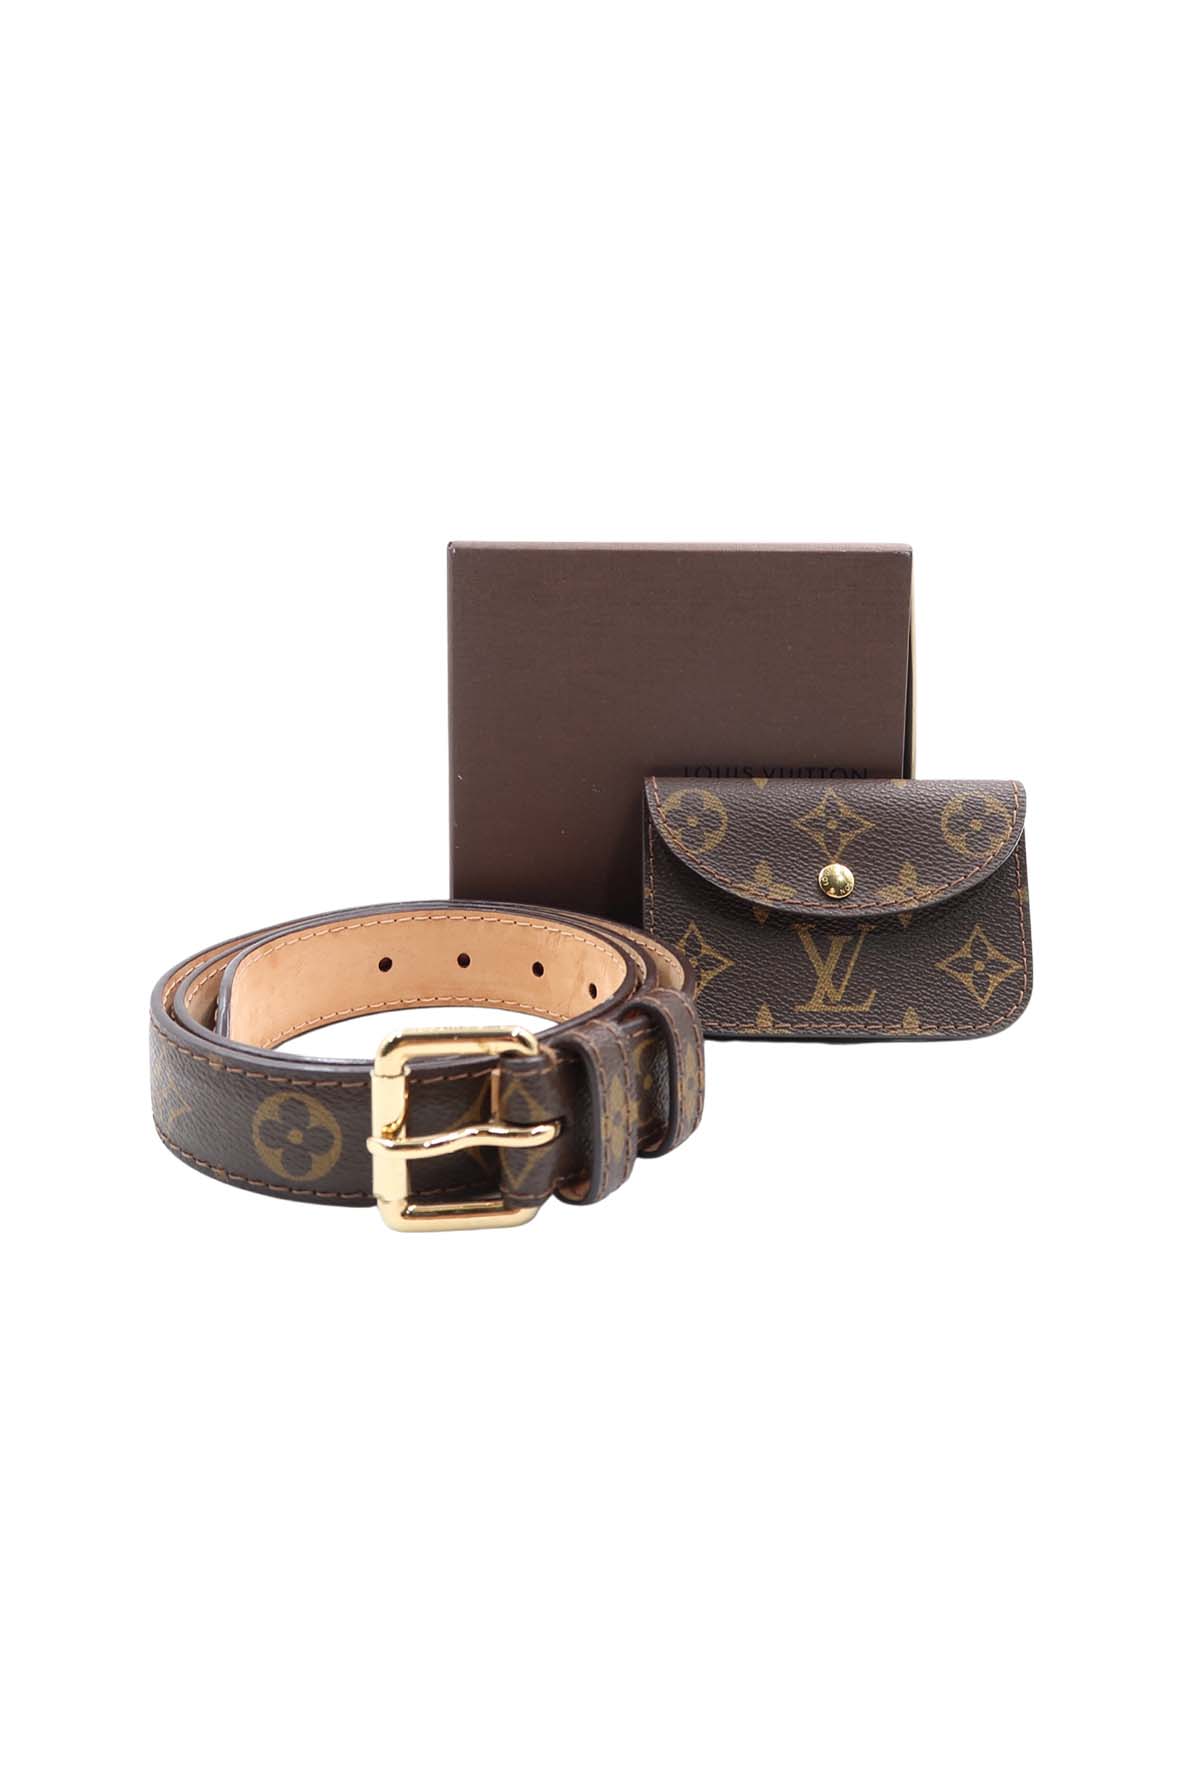 Louis Vuitton - fanny pack | Louis vuitton belt bag, Bags, Louis vuitton bag